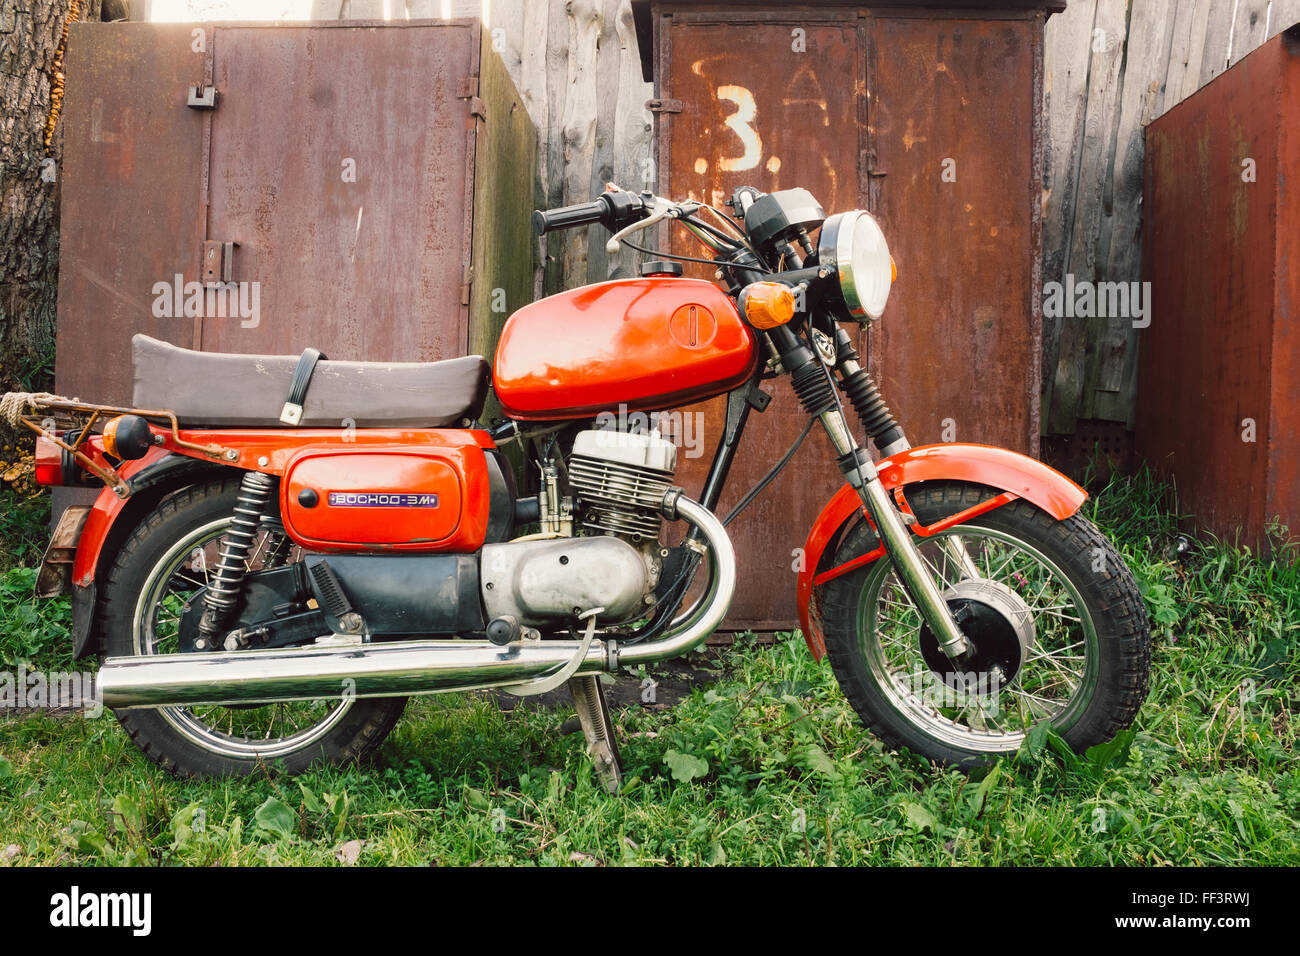 MINSK, BELARUS - 22. September 2013: Alte rote russischen (sowjetischen)  Motorrad "Woschod" auf grünen Rasen Hof geparkt. Diese Motorräder  Stockfotografie - Alamy